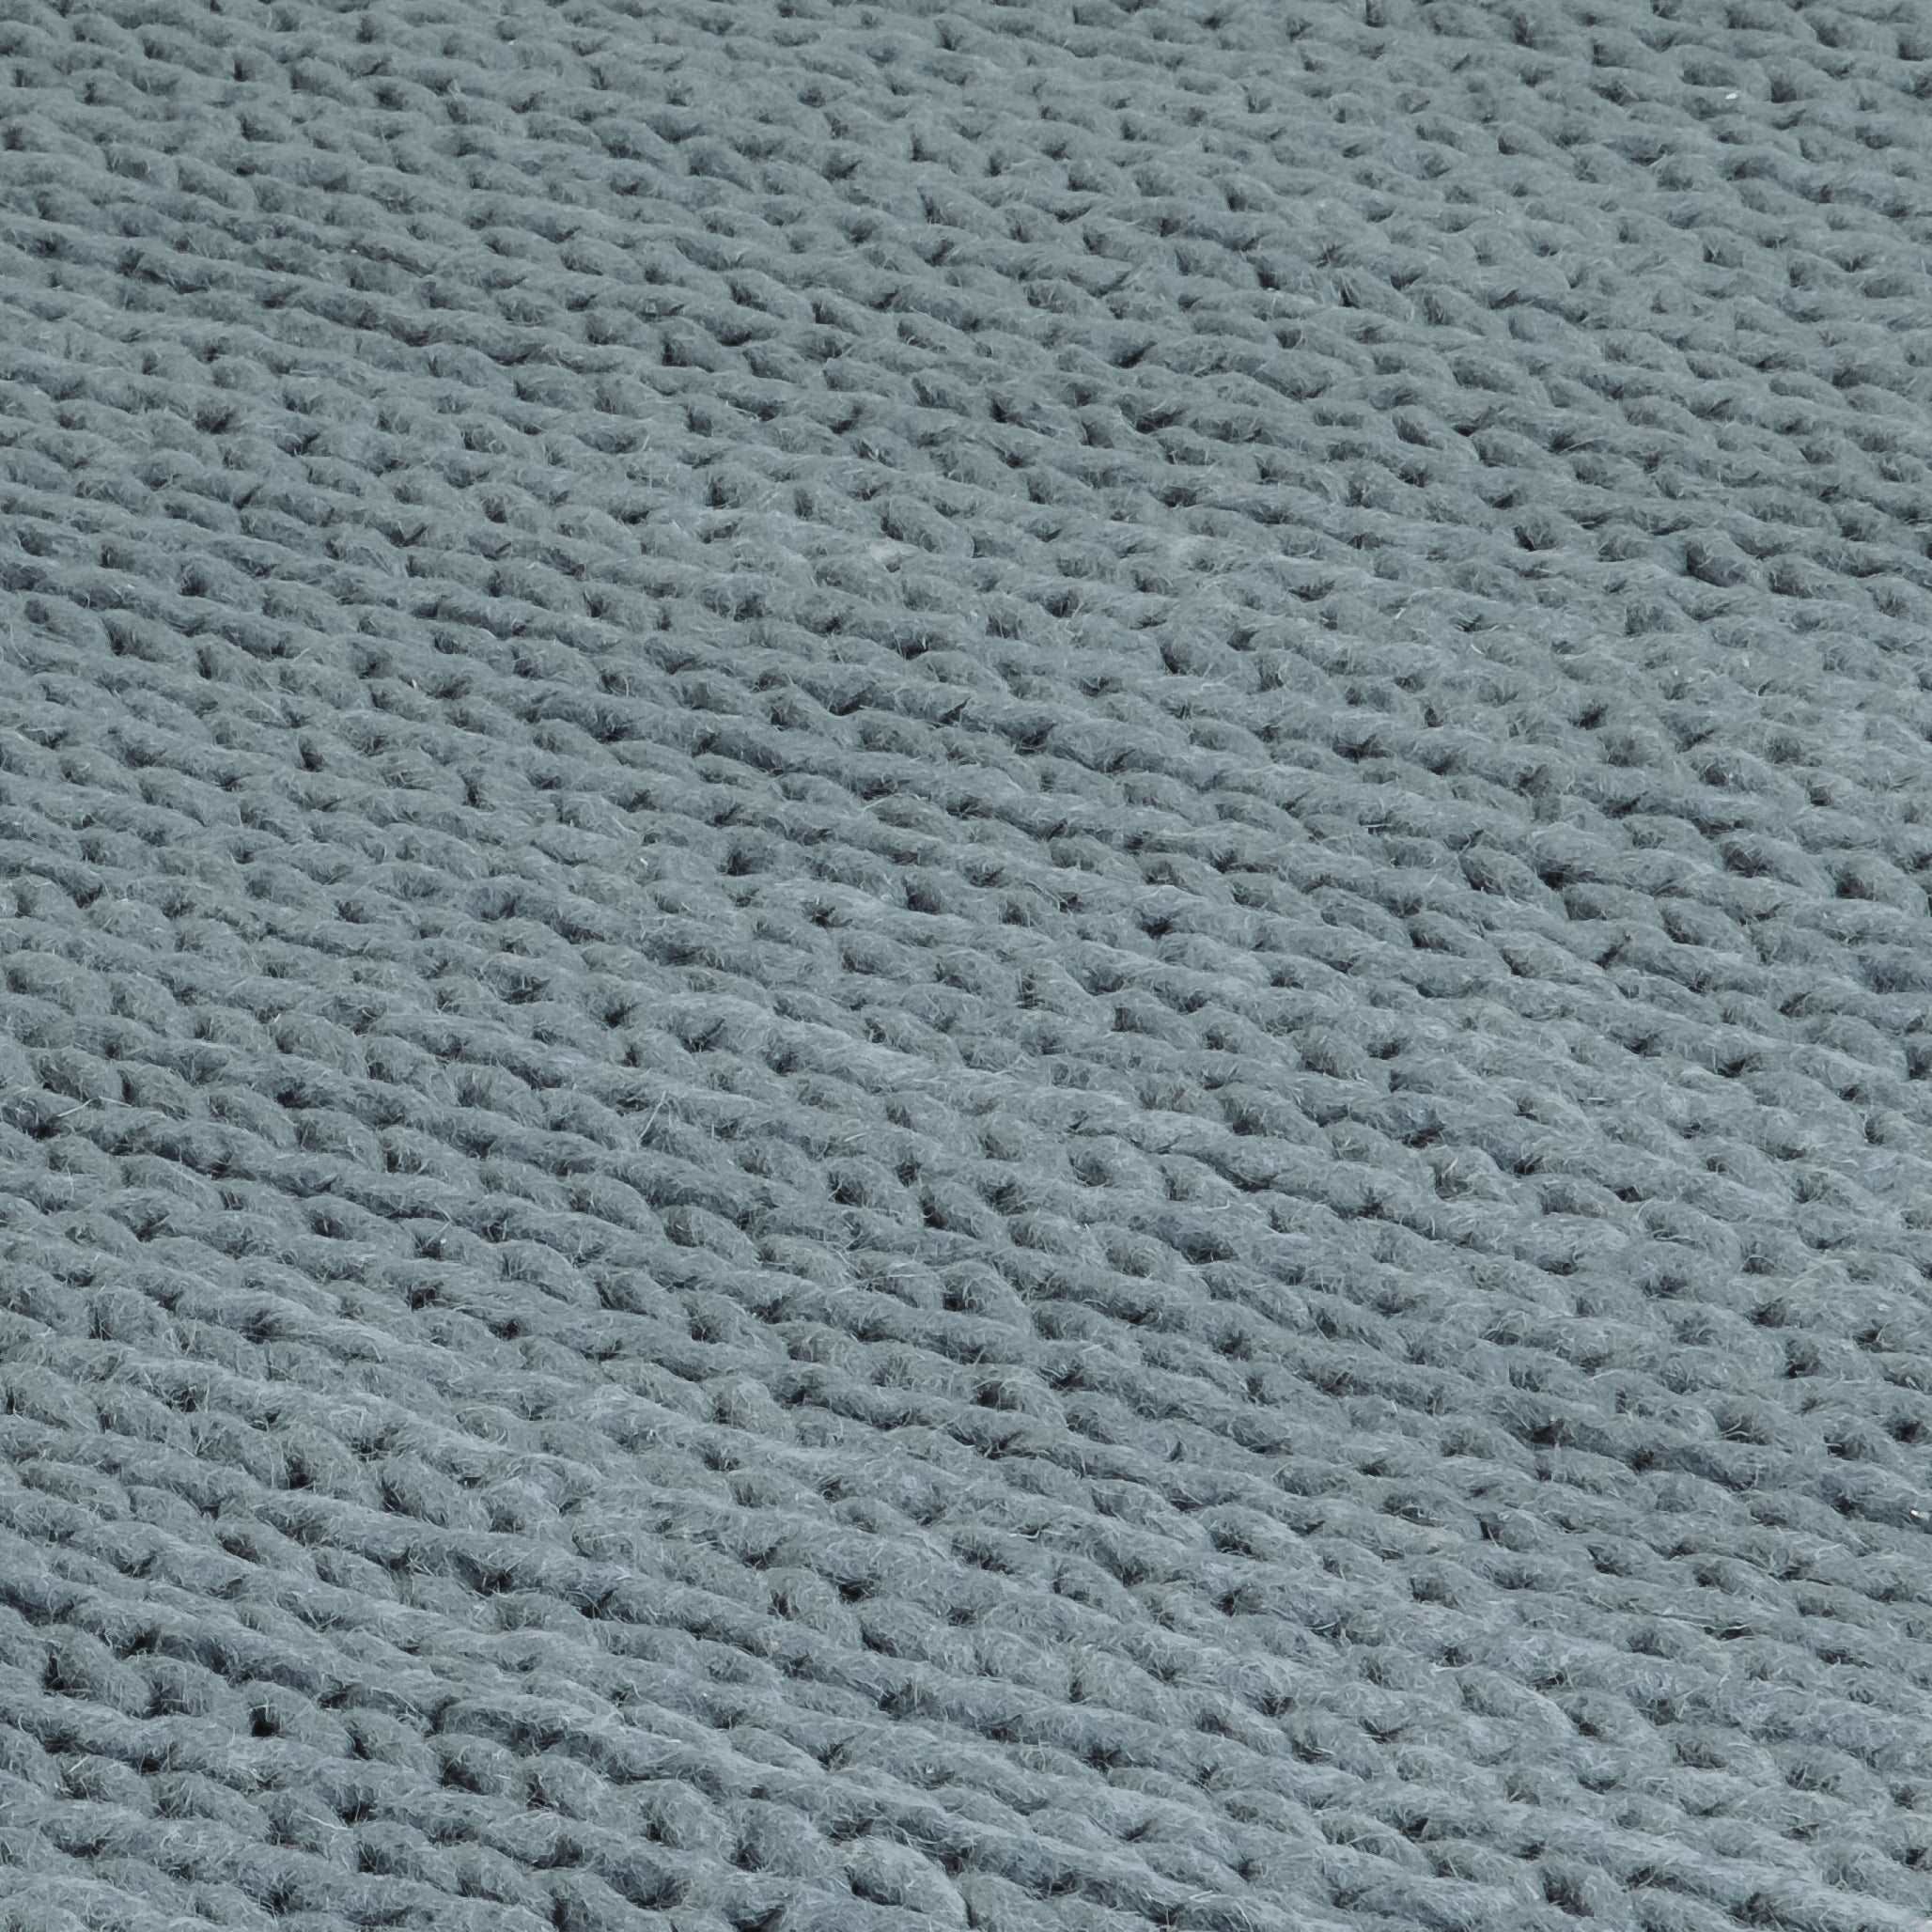 Regola Grey Knitted Large Rug